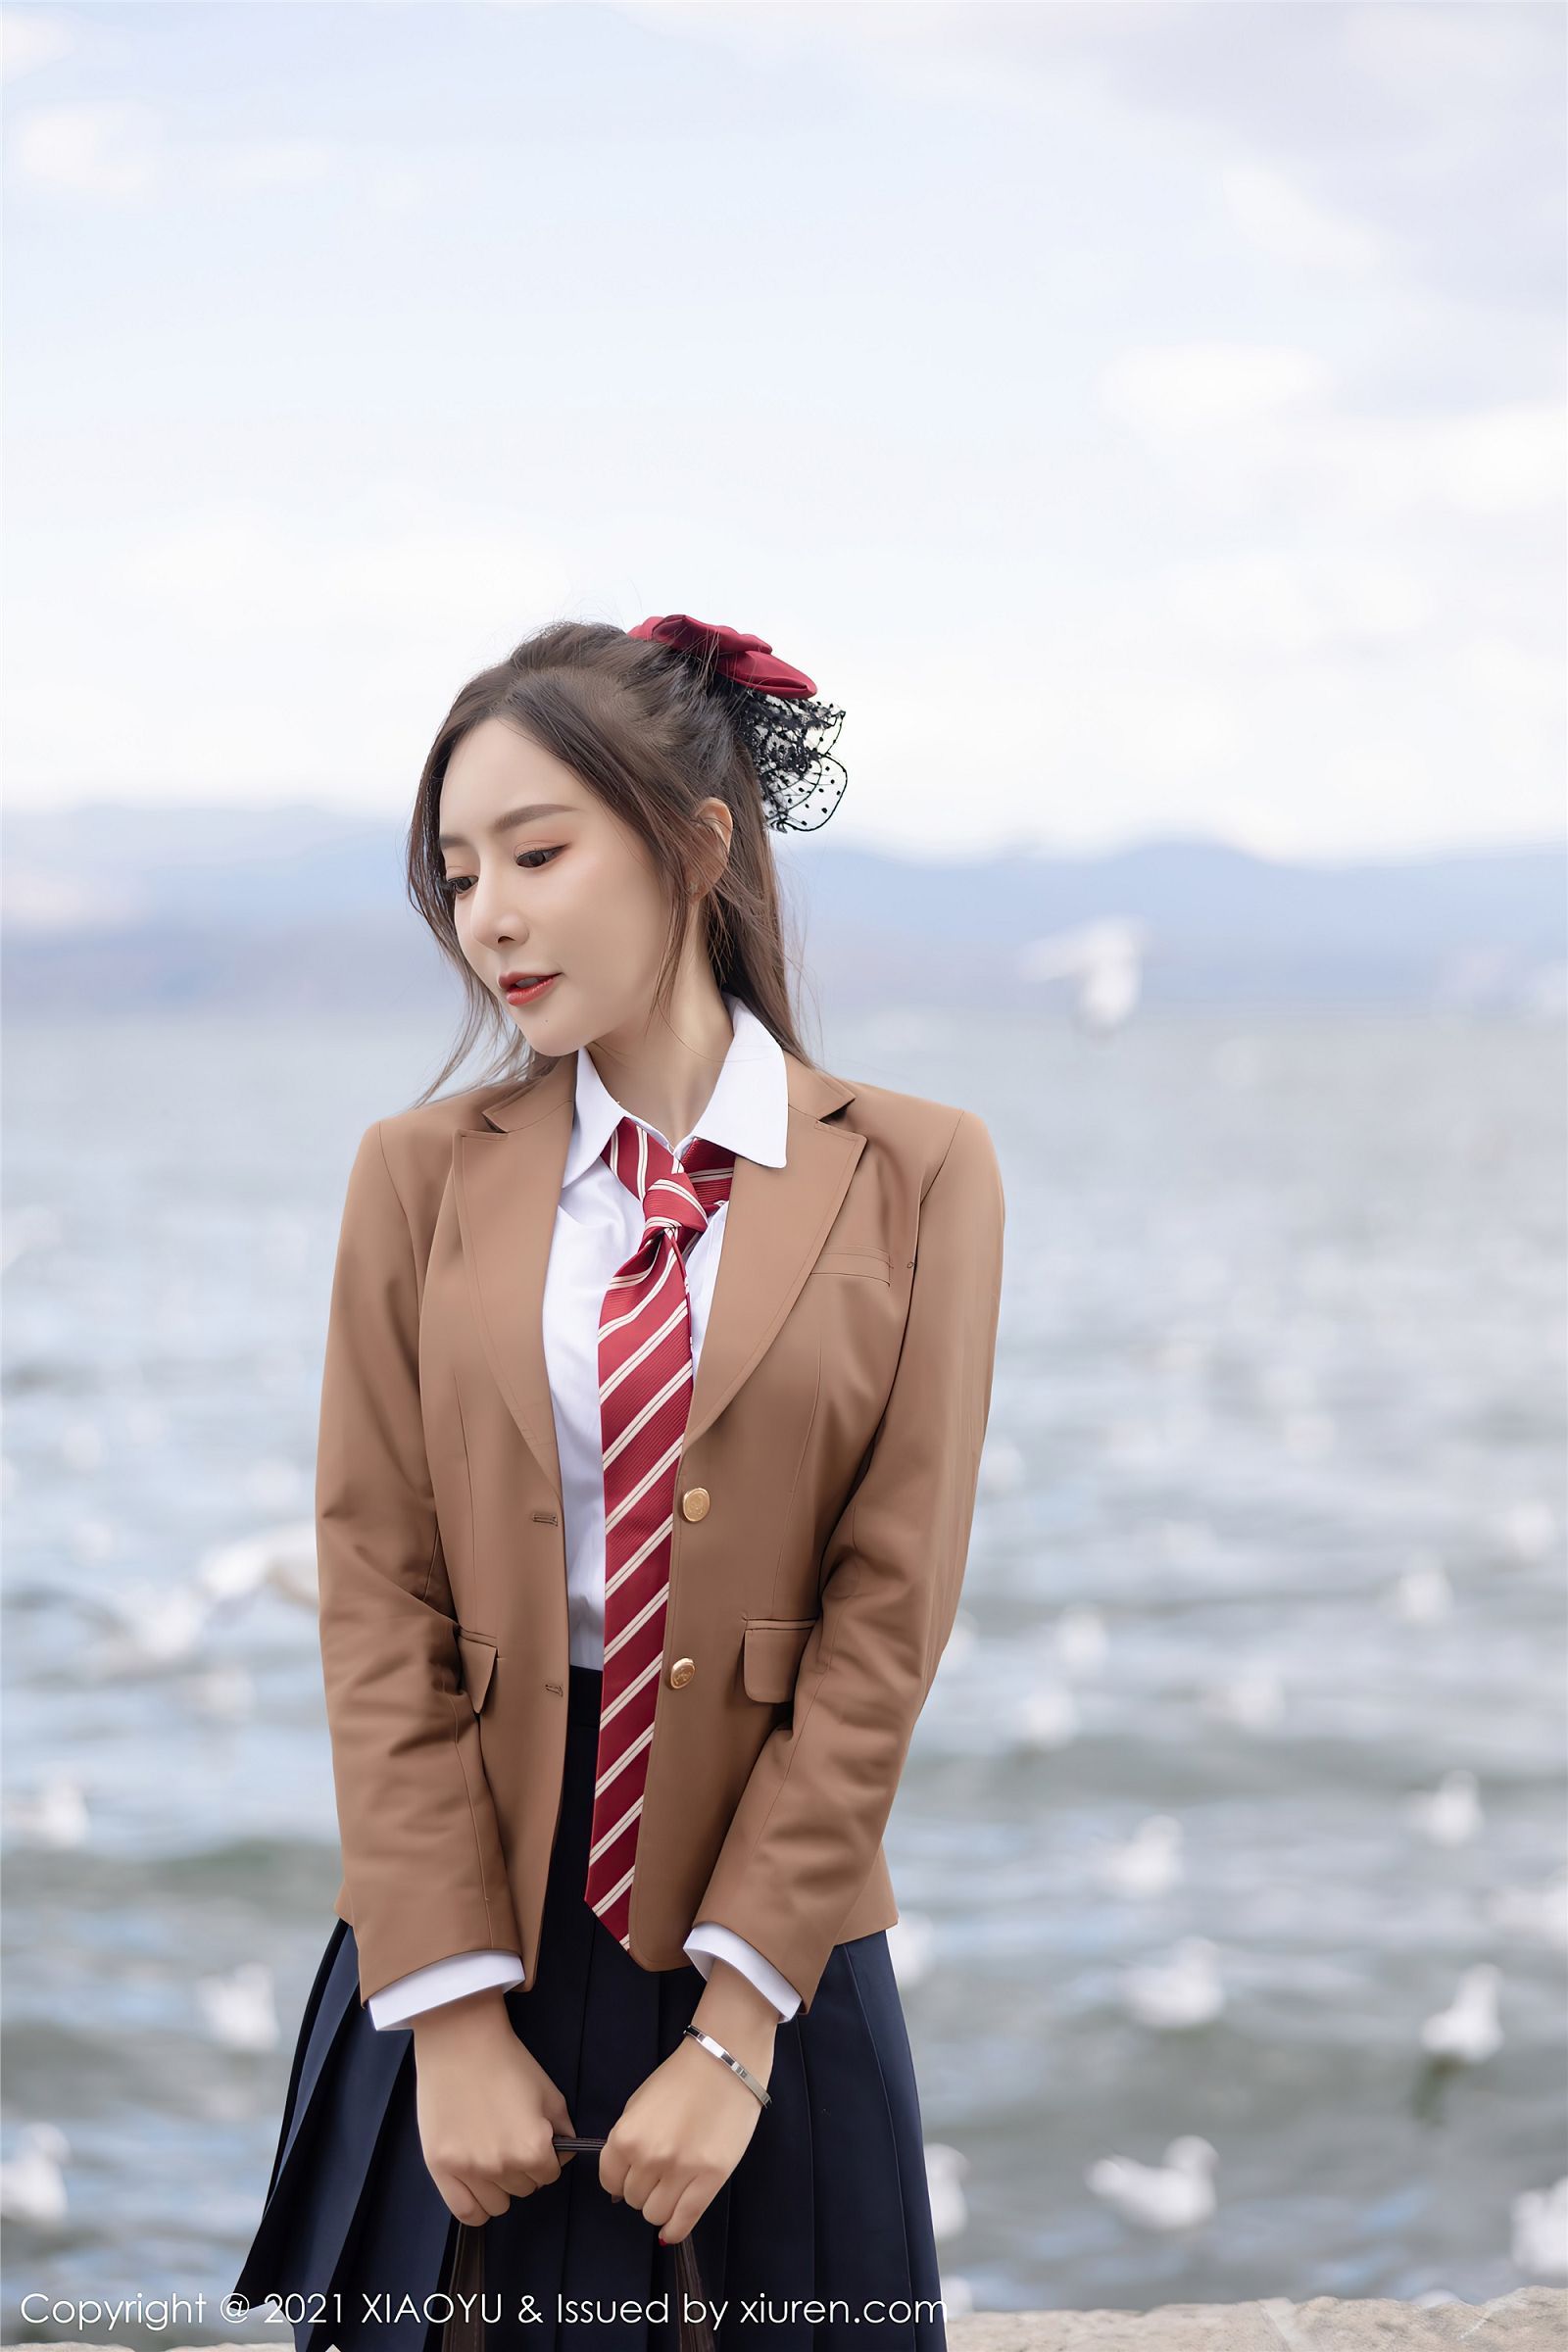 Wang Xin Yao Women 2021 Year Watermarked Tie Brunette Women Outdoors Asian Looking Away Standing 1600x2400